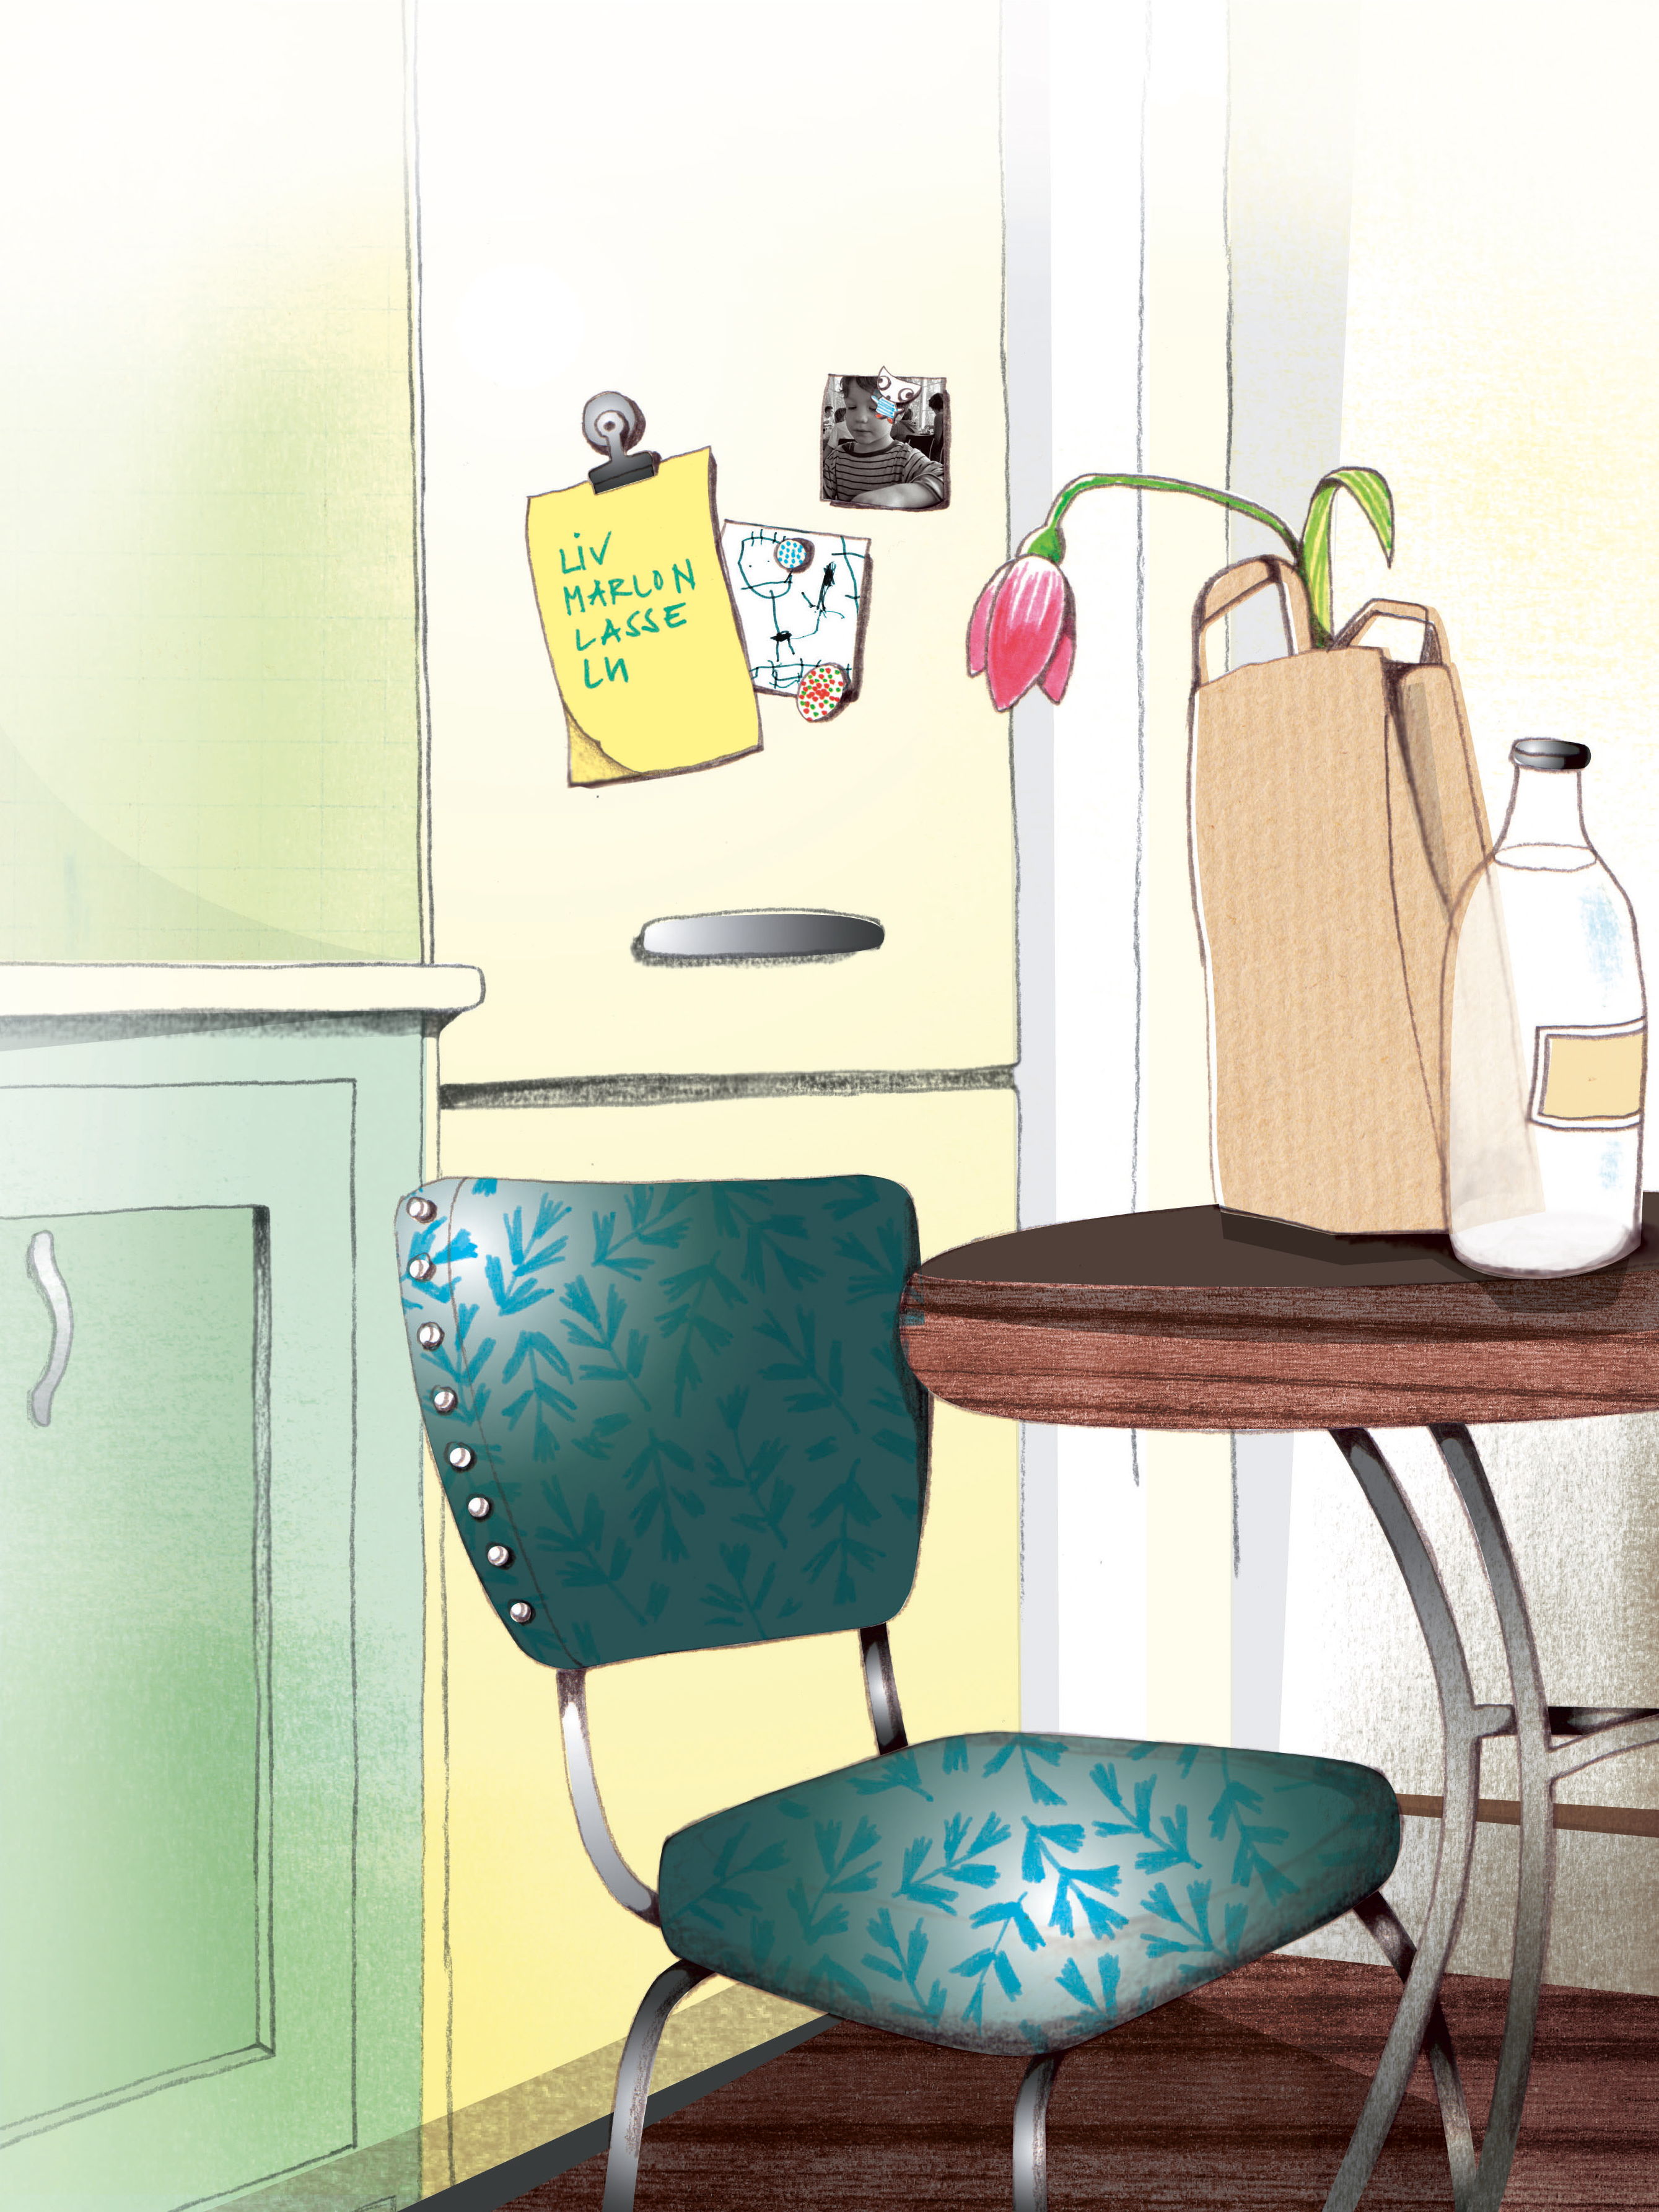 Illustration: Auf dem Esstisch liegt eine Tüte mit einer verwelkte Blume